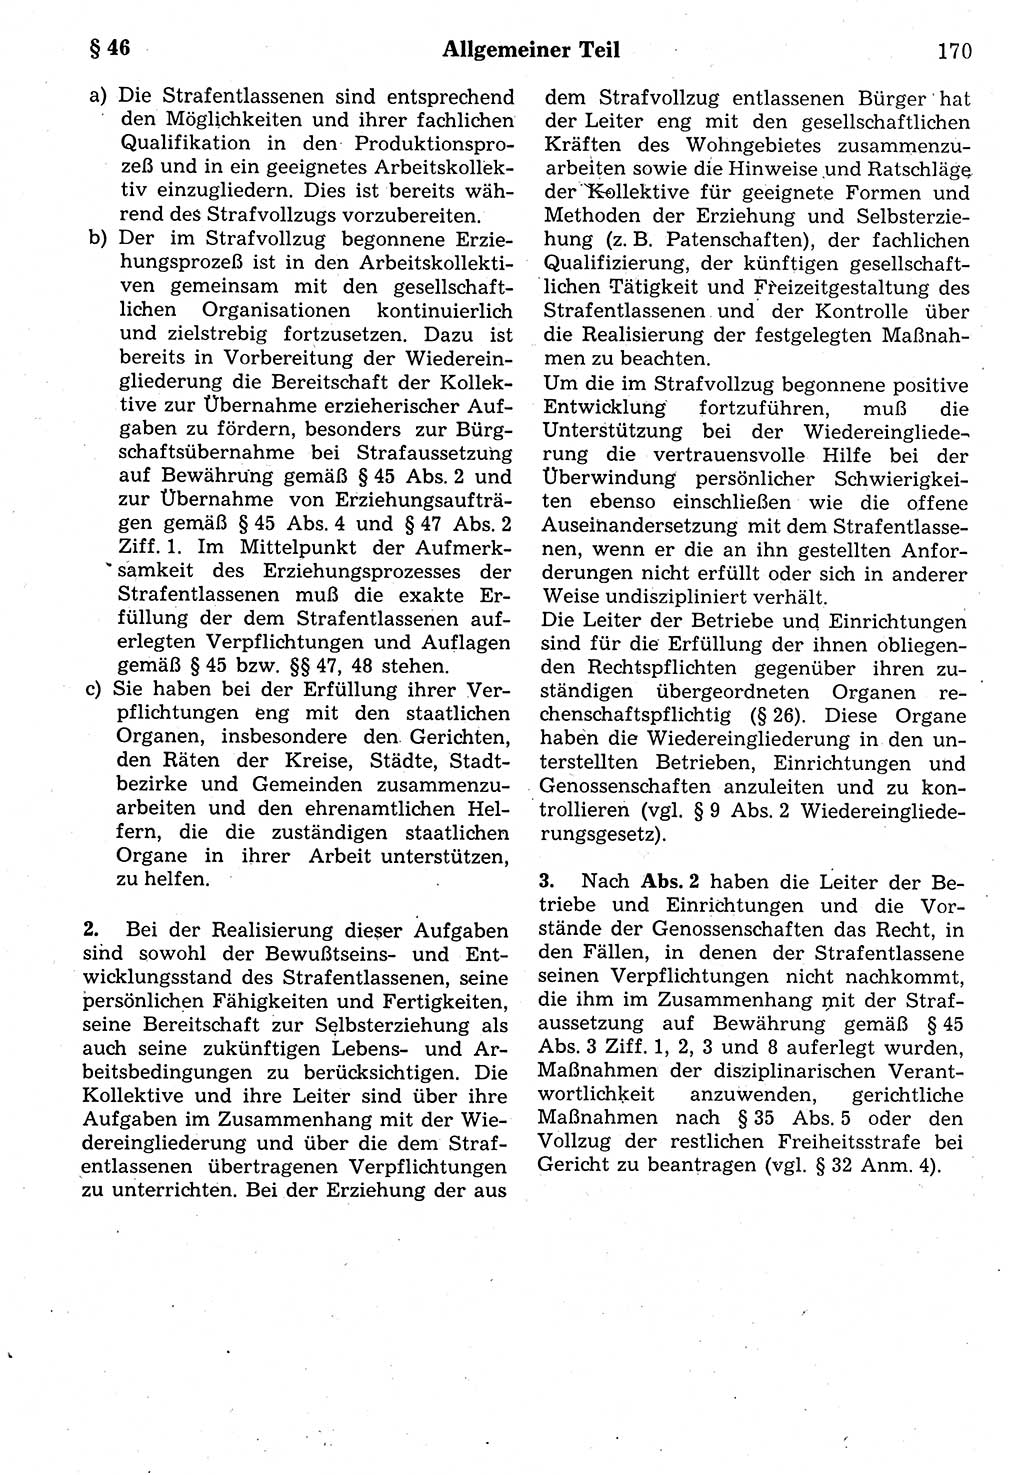 Strafrecht der Deutschen Demokratischen Republik (DDR), Kommentar zum Strafgesetzbuch (StGB) 1987, Seite 170 (Strafr. DDR Komm. StGB 1987, S. 170)